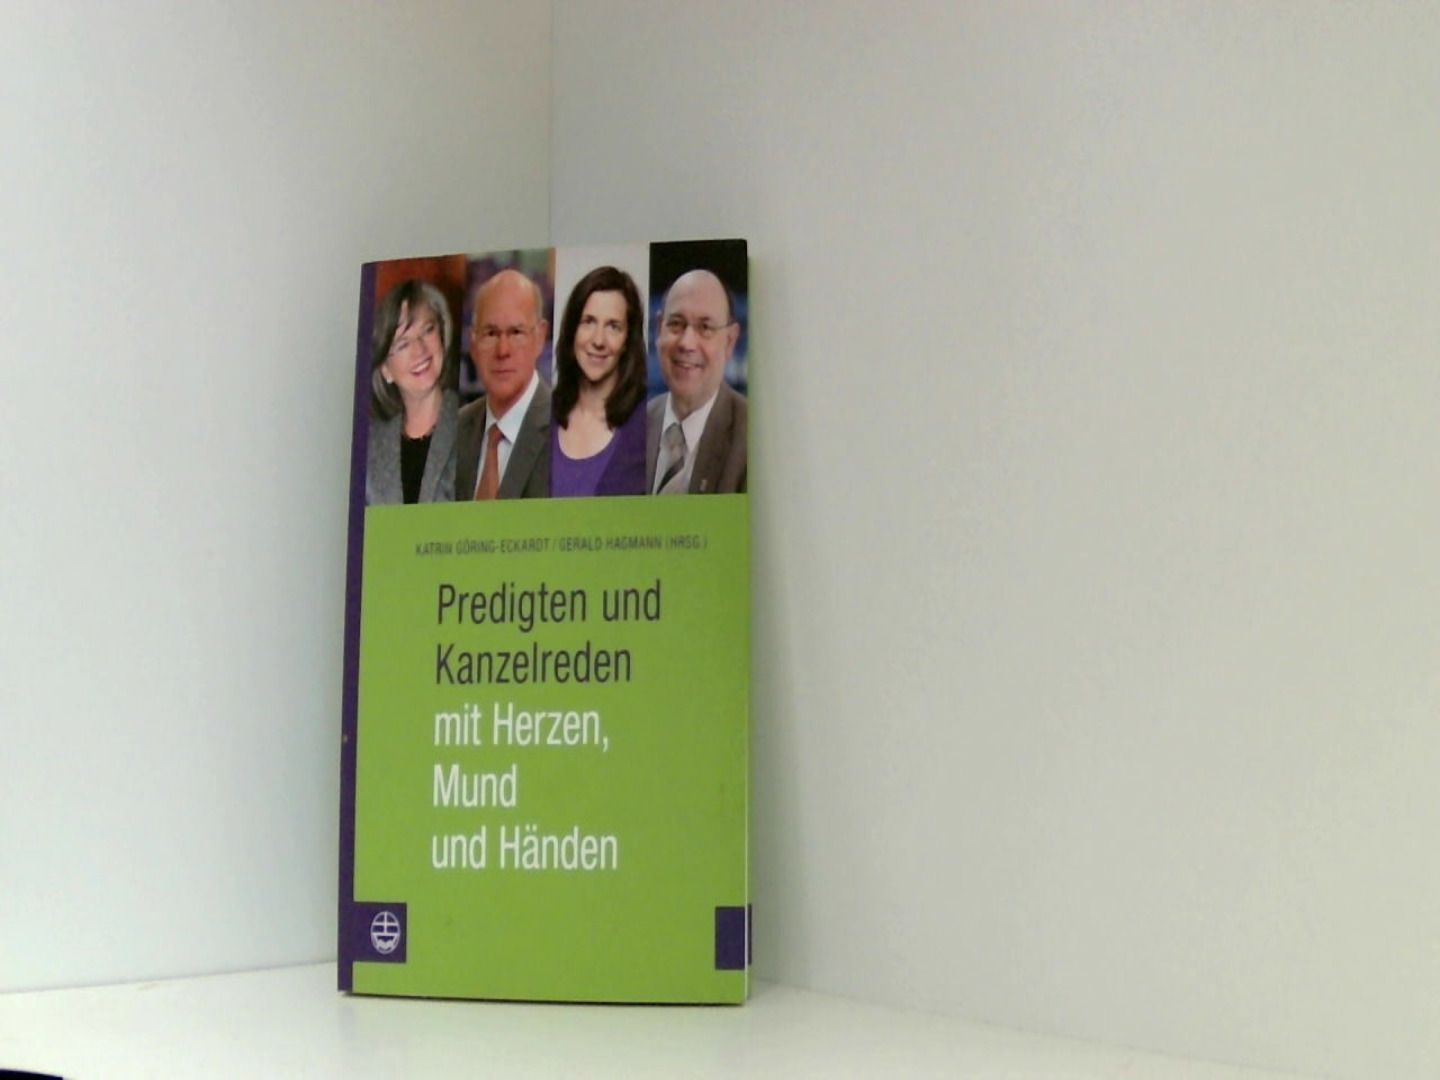 Predigten und Kanzelreden mit Herzen, Mund und Händen - Katrin Göring-Eckardt | Gerald Hagmann, (Hrsg.)